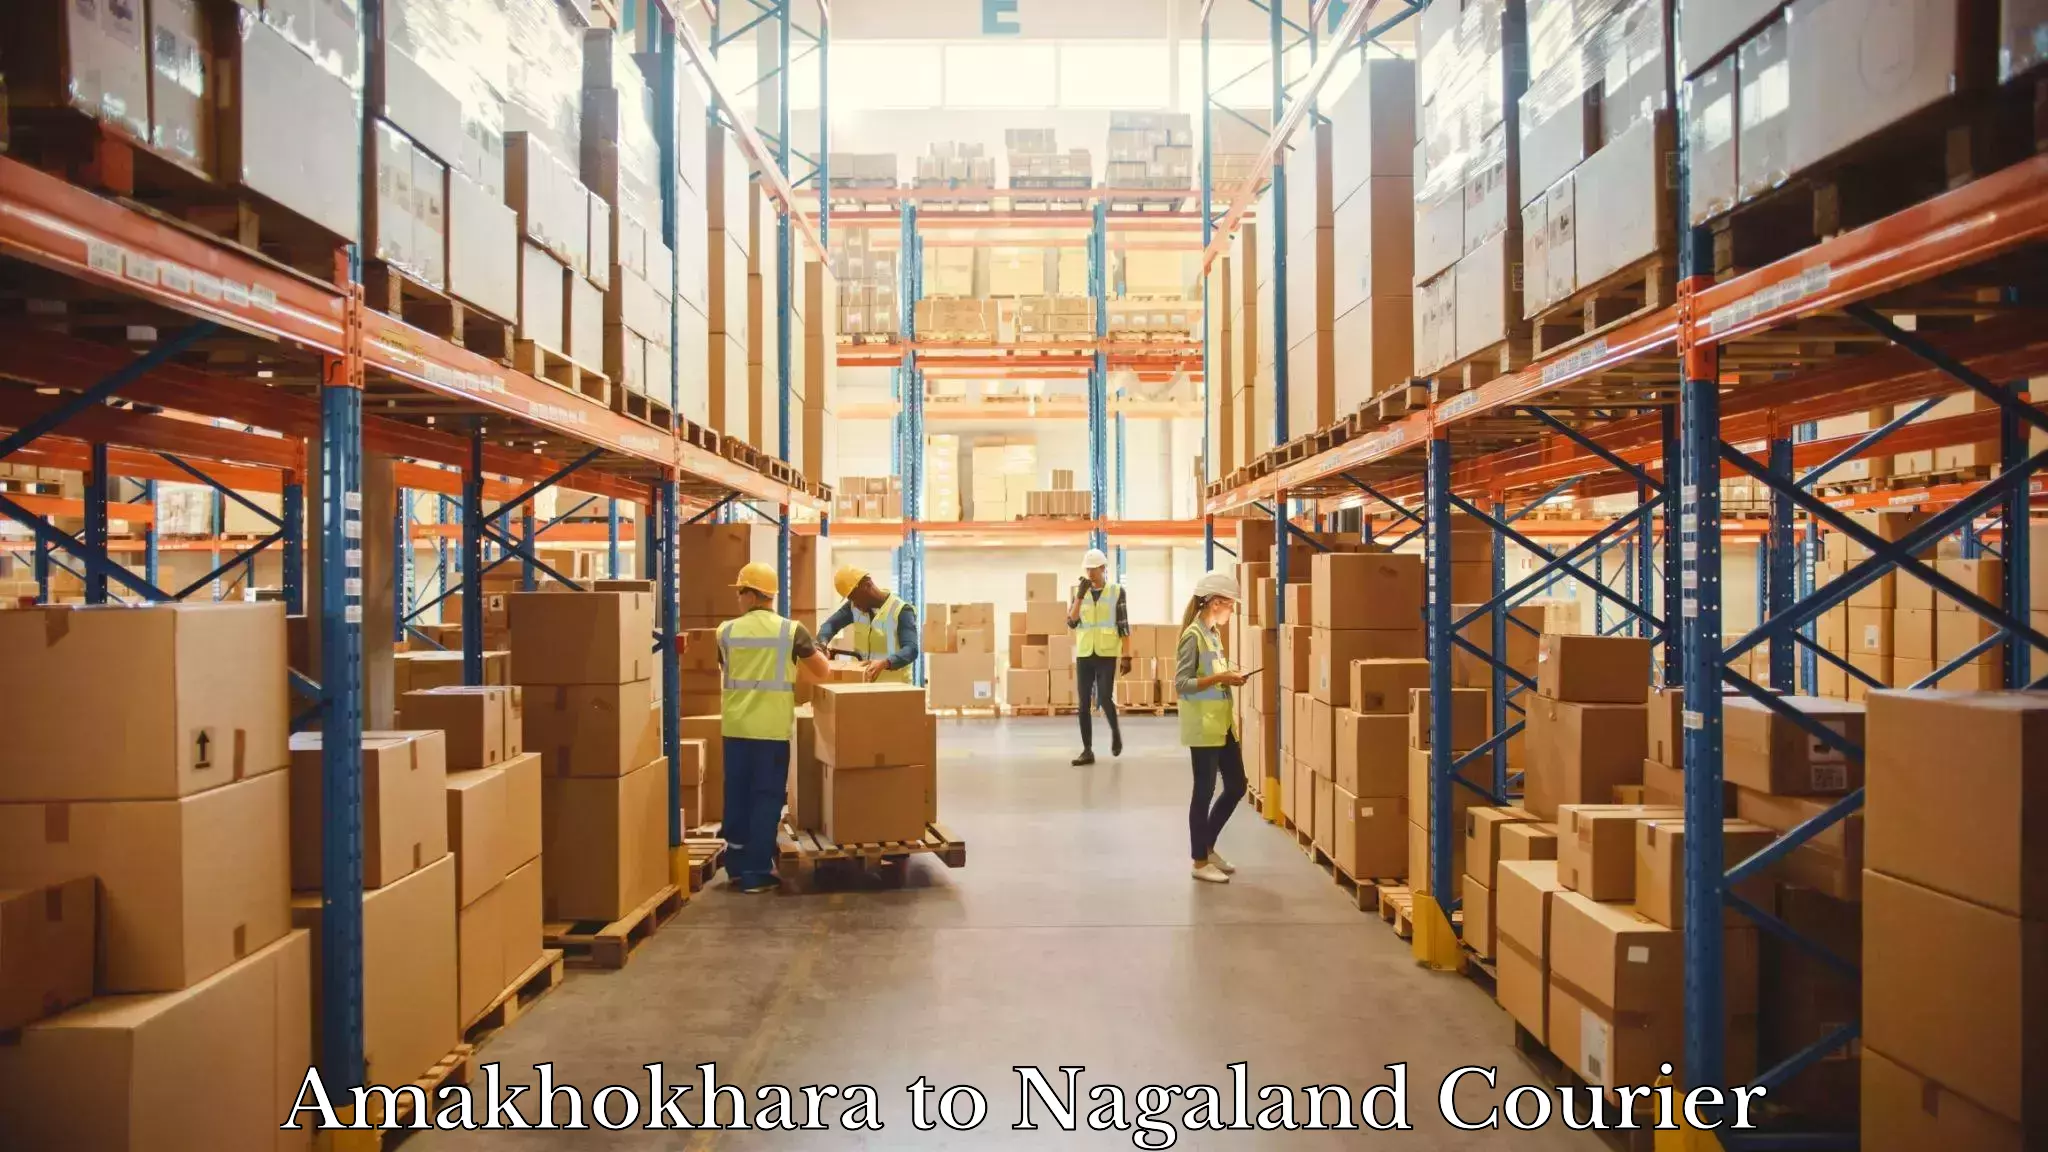 24/7 courier service Amakhokhara to Nagaland